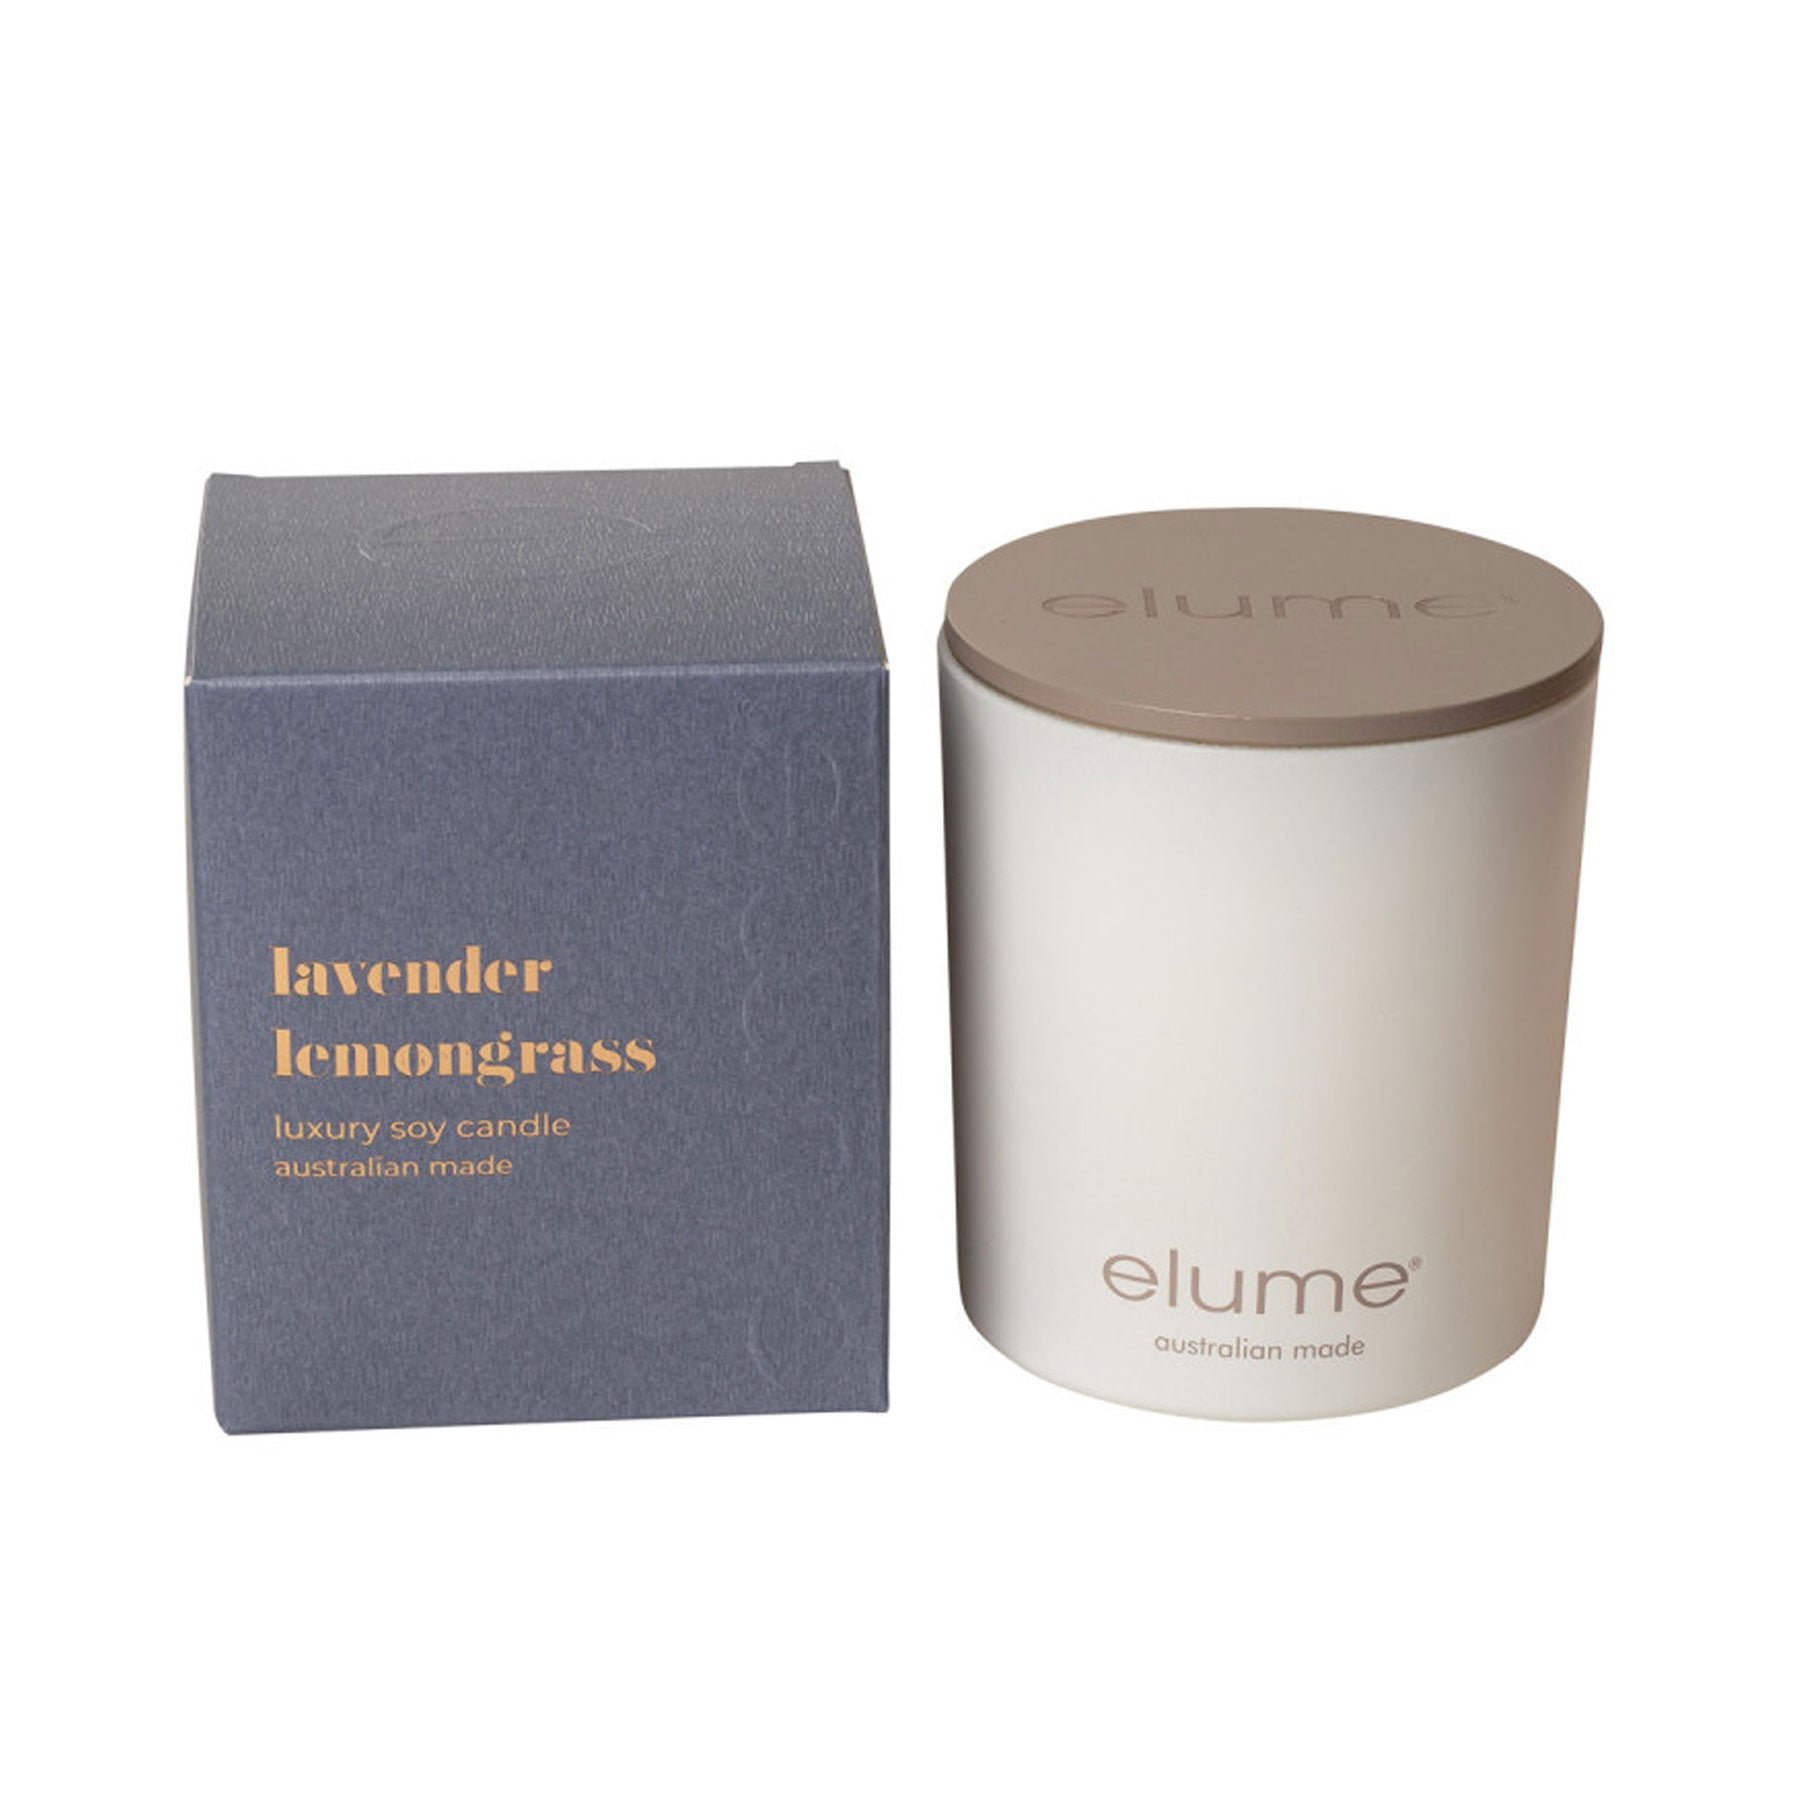 Lavender Lemongrass: Elume Luxury Soy Candle